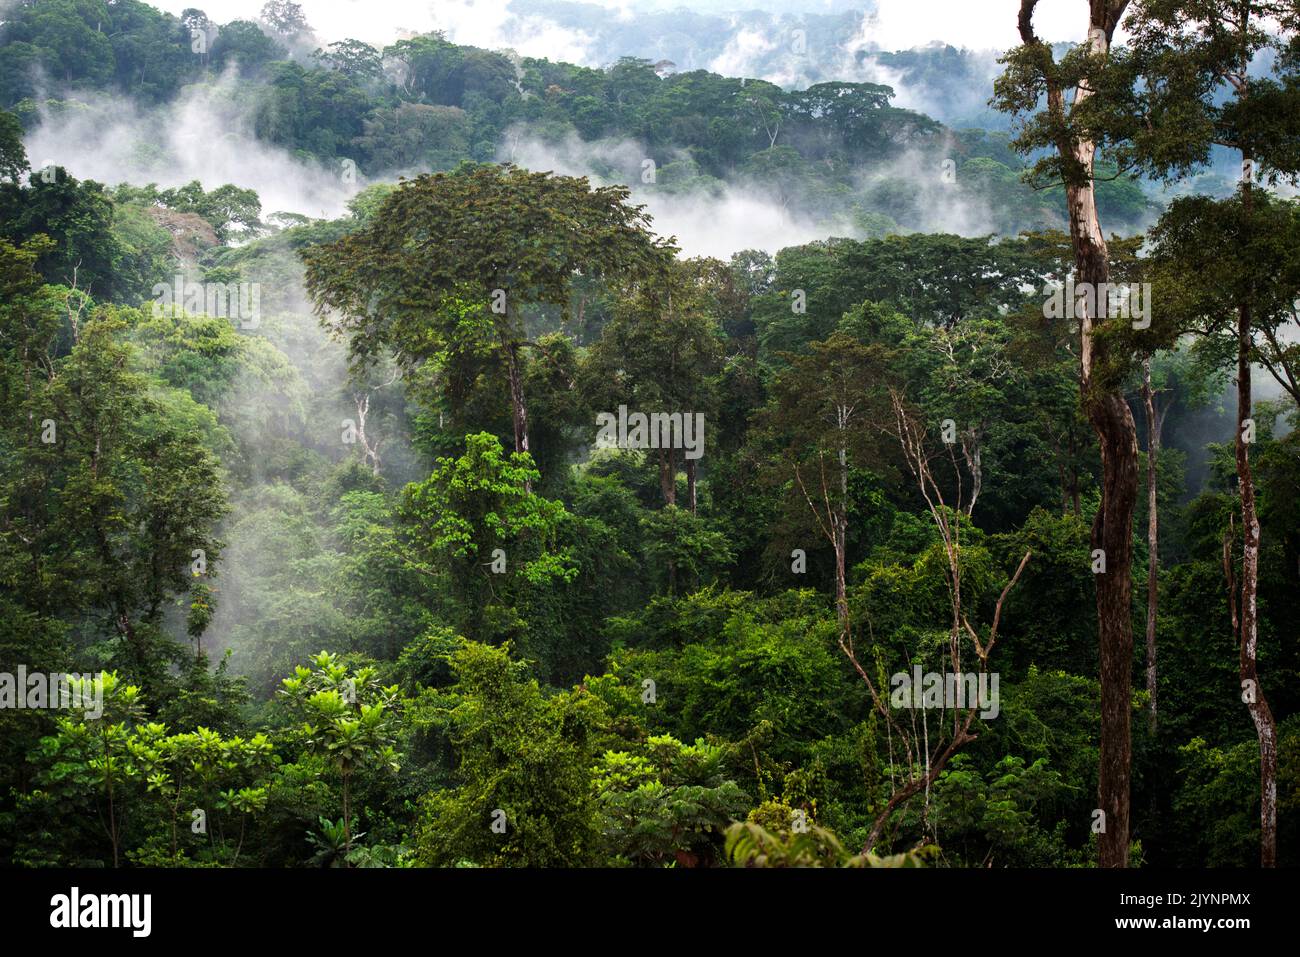 La forêt d'abeilles, forêt équatoriale du Gabon. Le domaine forestier couvre plus de 80% de la surface du pays, généralement une jungle presque impénétrable. Banque D'Images